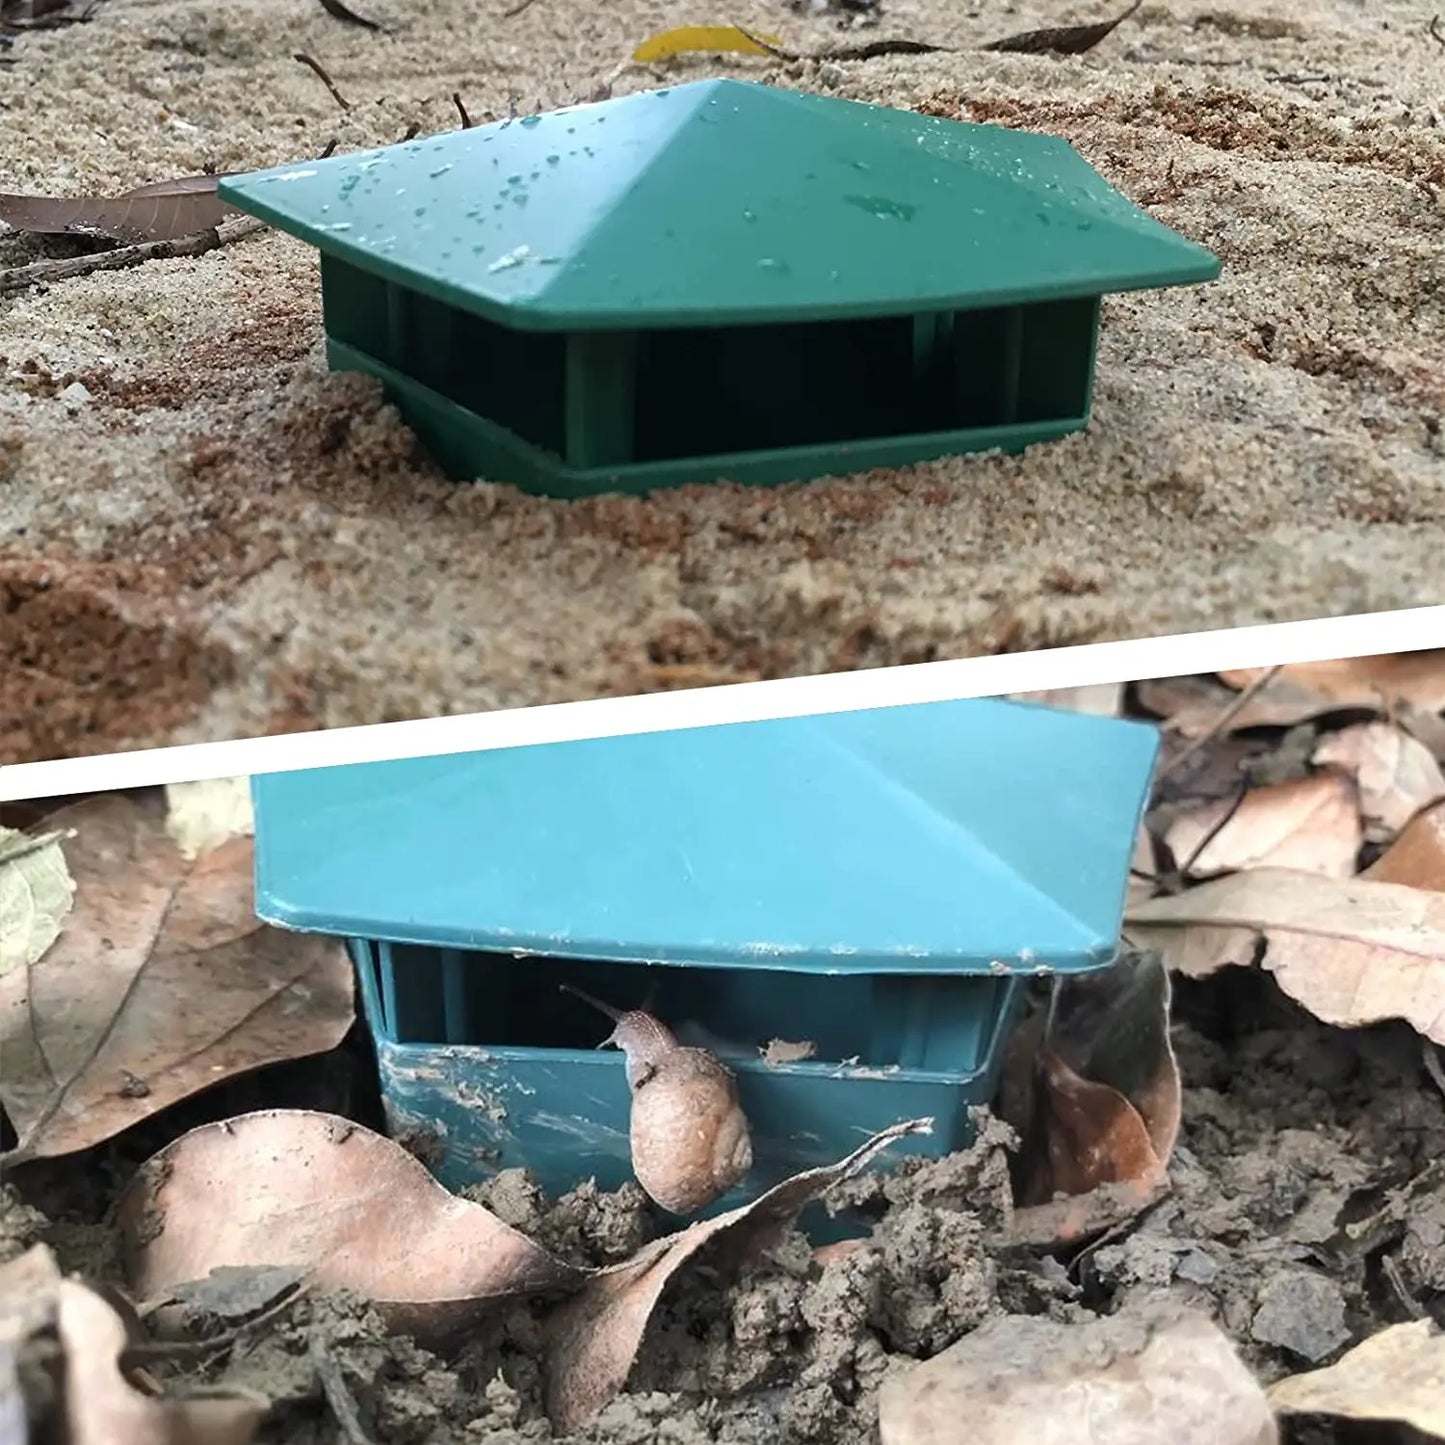 2Pcs Eco-friendly Beer Snail Cage Slug House Snail Trap Catcher Pest Reject Tools Pests Bait Station Garden Farm Plant Protector